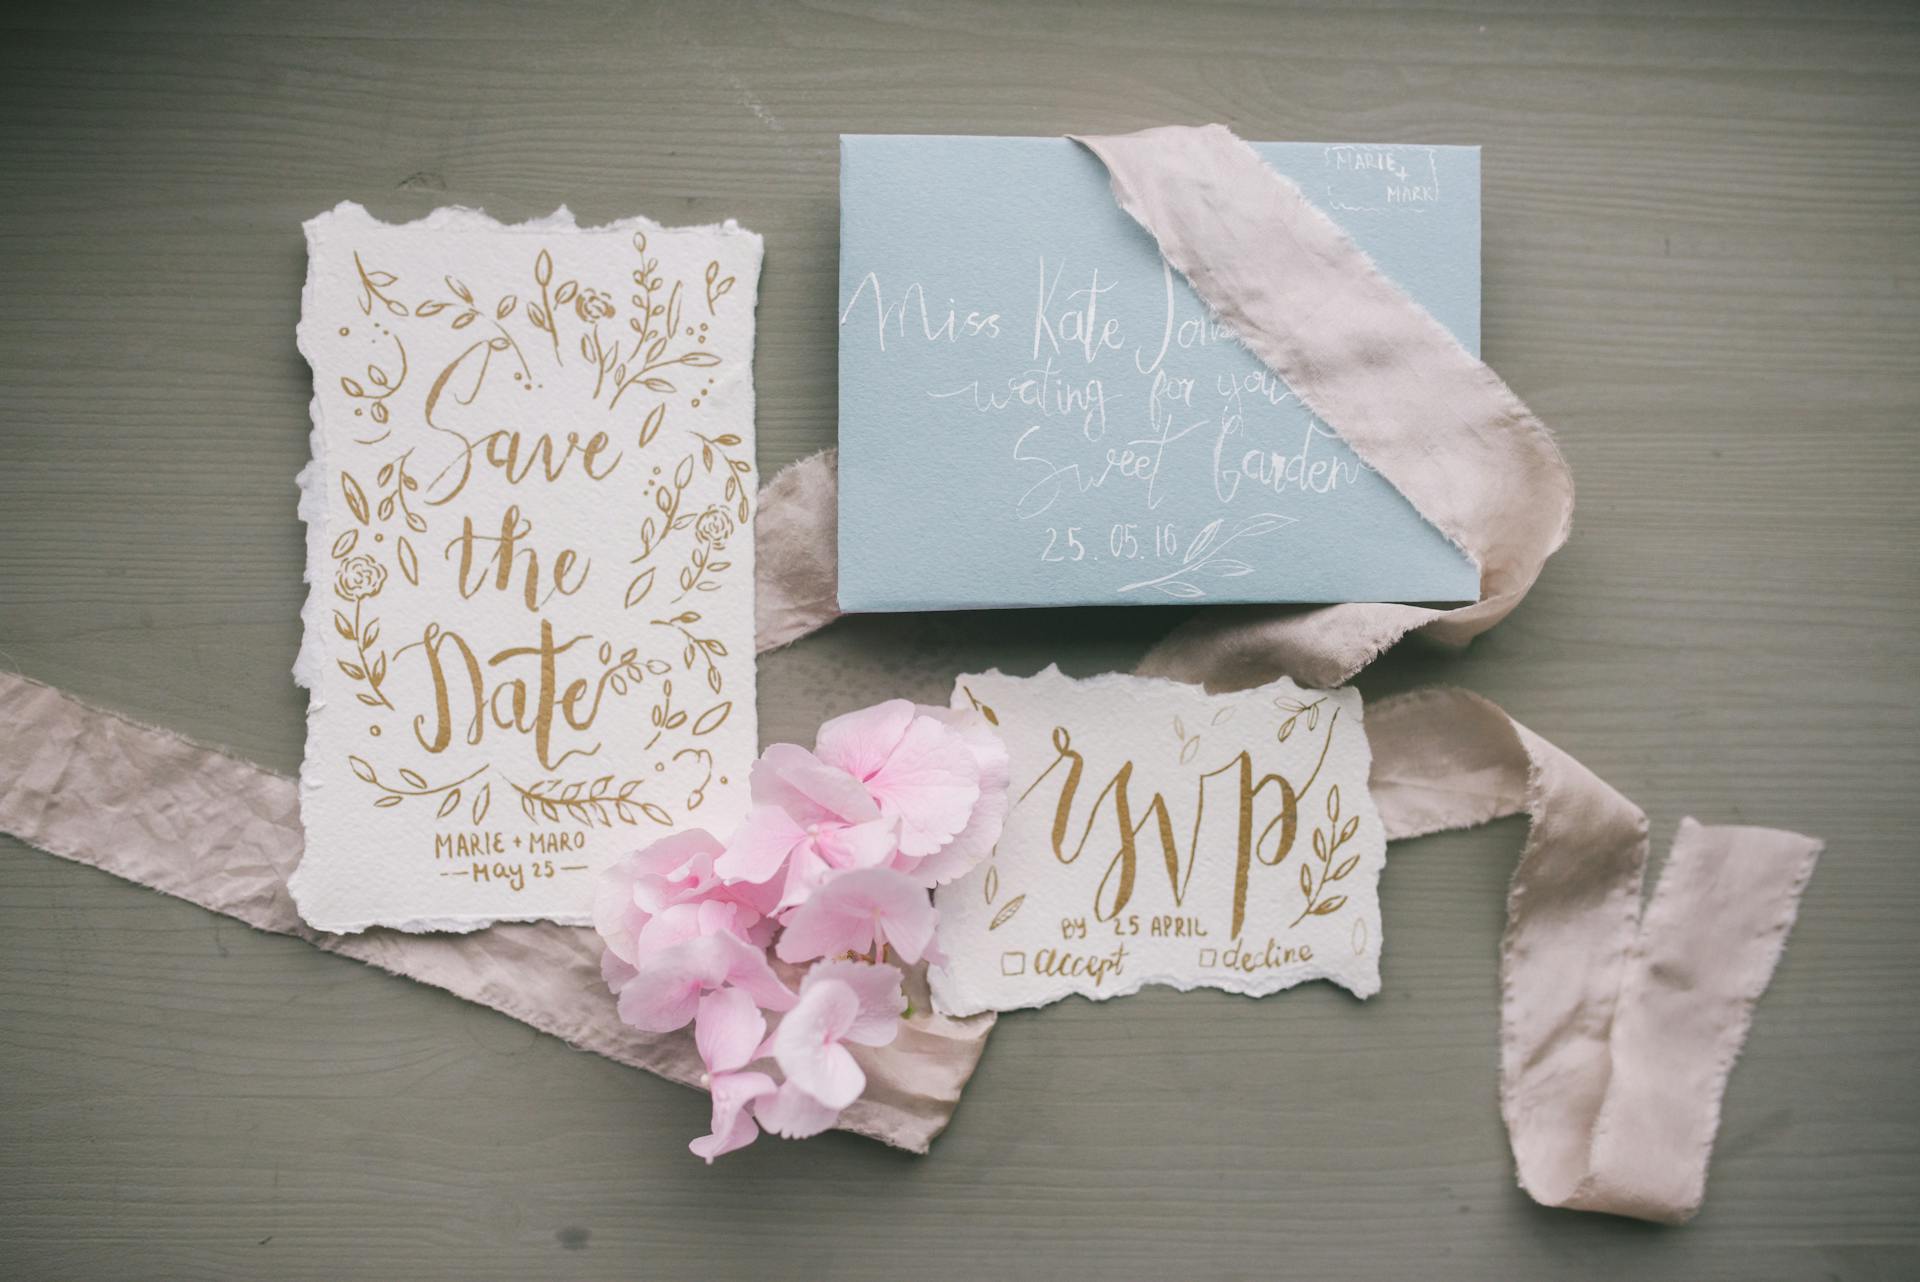 A wedding invitation | Source: Pexels